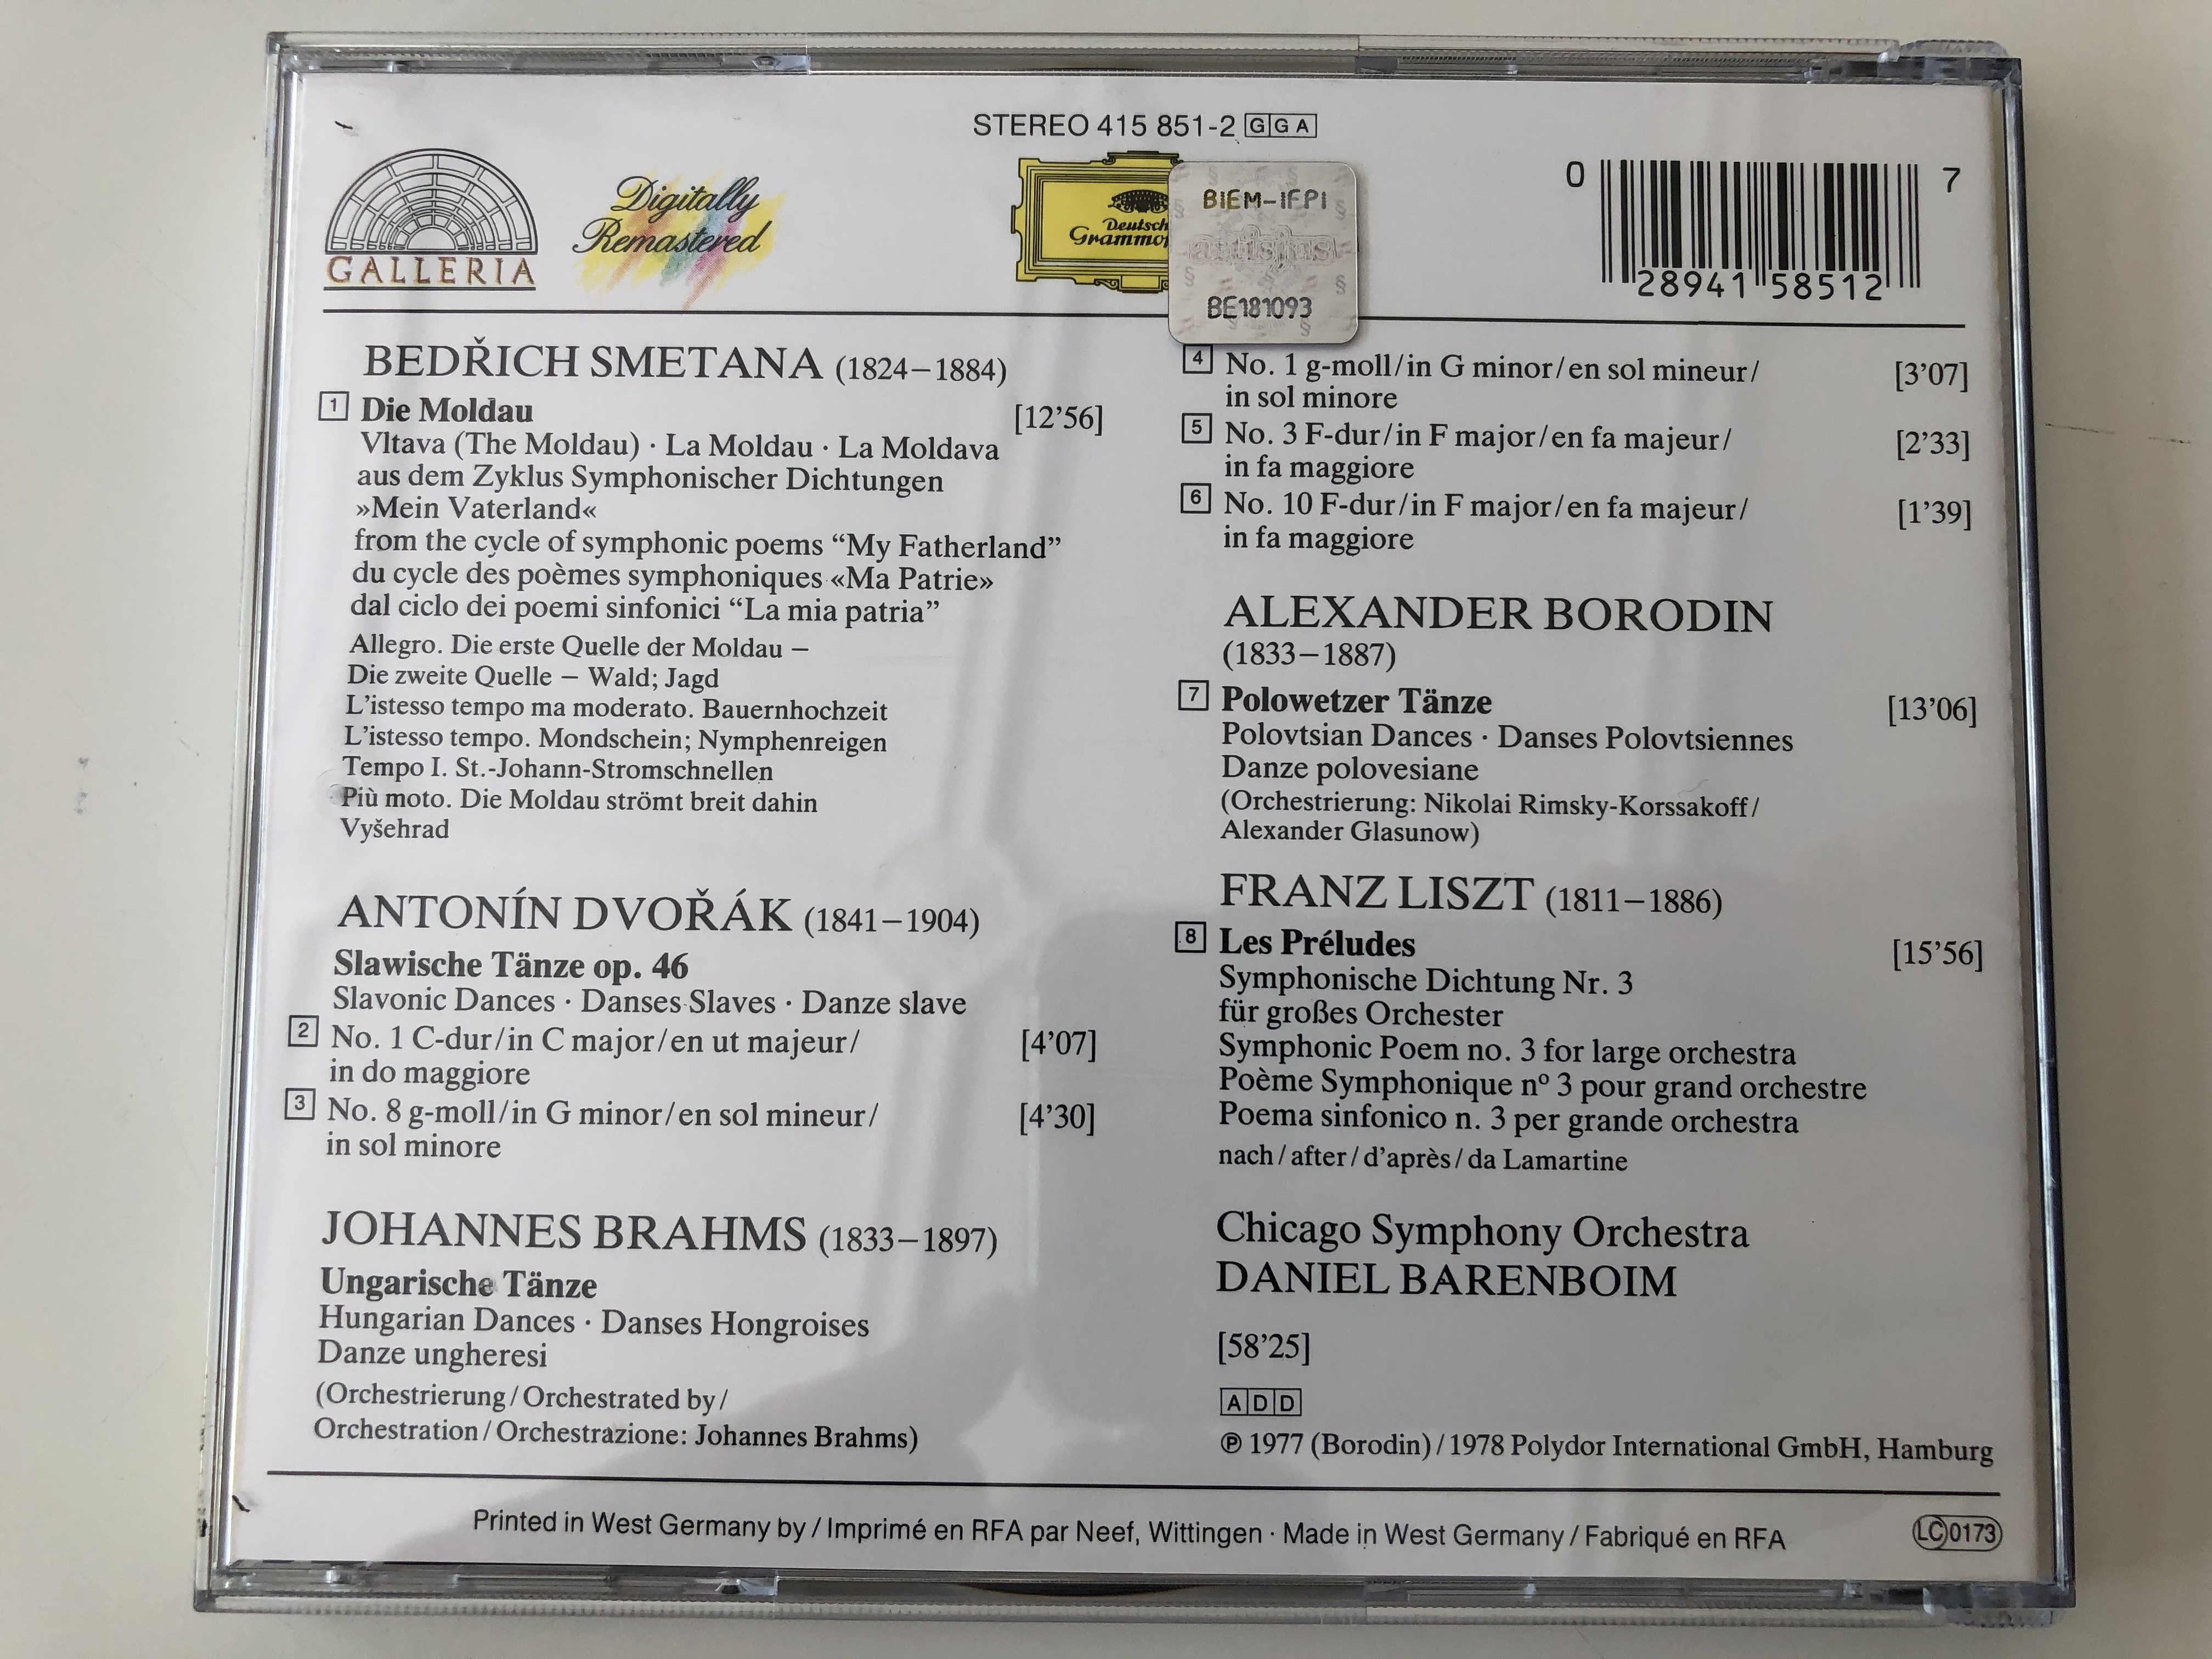 die-moldau-slawische-tanze-ungarische-tanze-polowetzer-tanze-les-preludes-chicago-symphony-orchestra-daniel-barenboim-deutsche-grammophon-audio-cd-stereo-415-851-2-6-.jpg